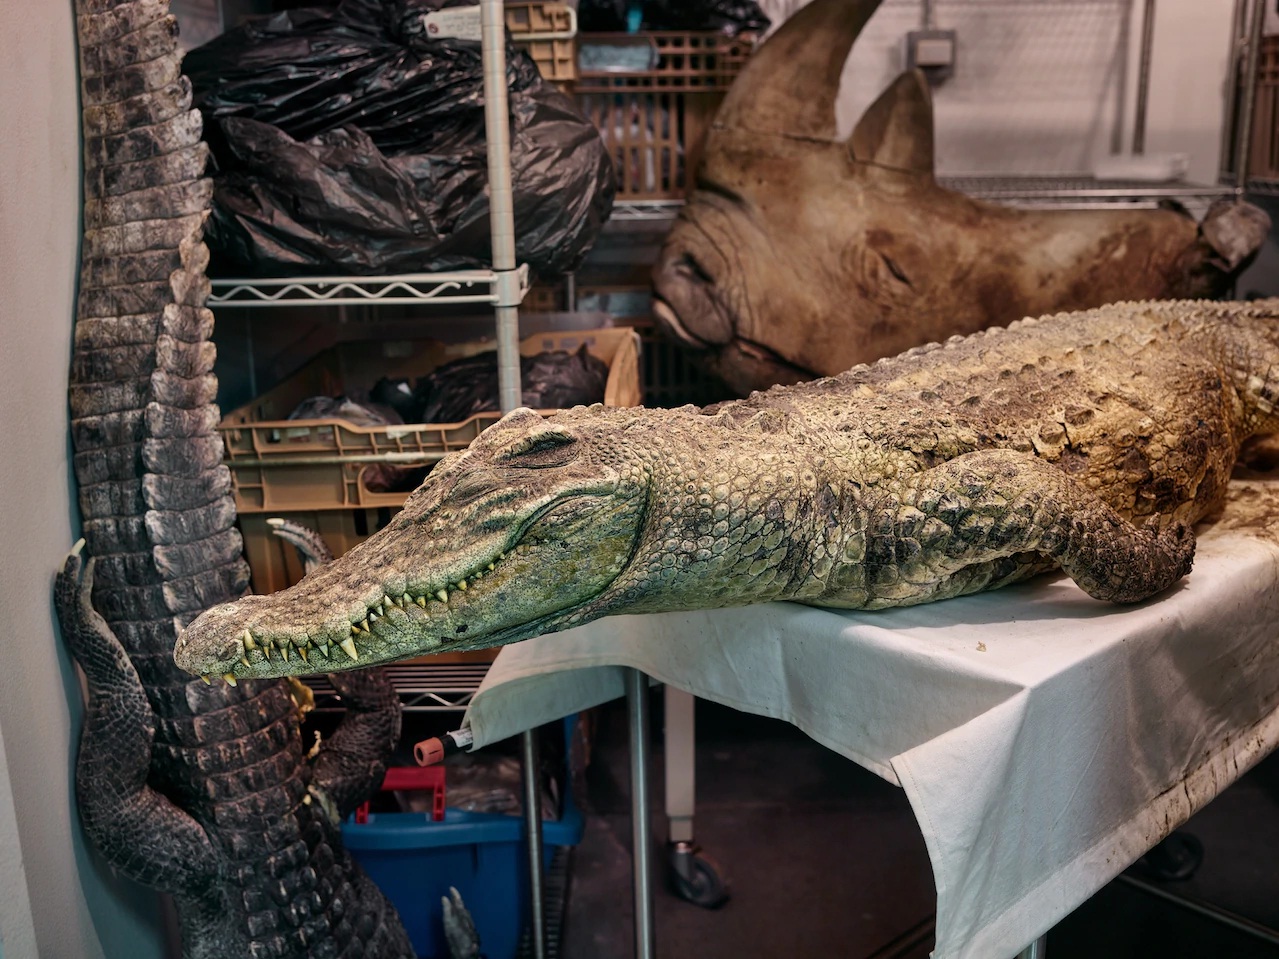 Xác của con cá sấu Xiêm nằm trên bàn trong buồng kết đông ở phòng thí nghiệm của Witmer, bao quanh là các mẫu vật giải phẫu khác. Cá sấu Xiêm là loài rất nguy cấp; cá thể này chết vì nguyên nhân tự nhiên.